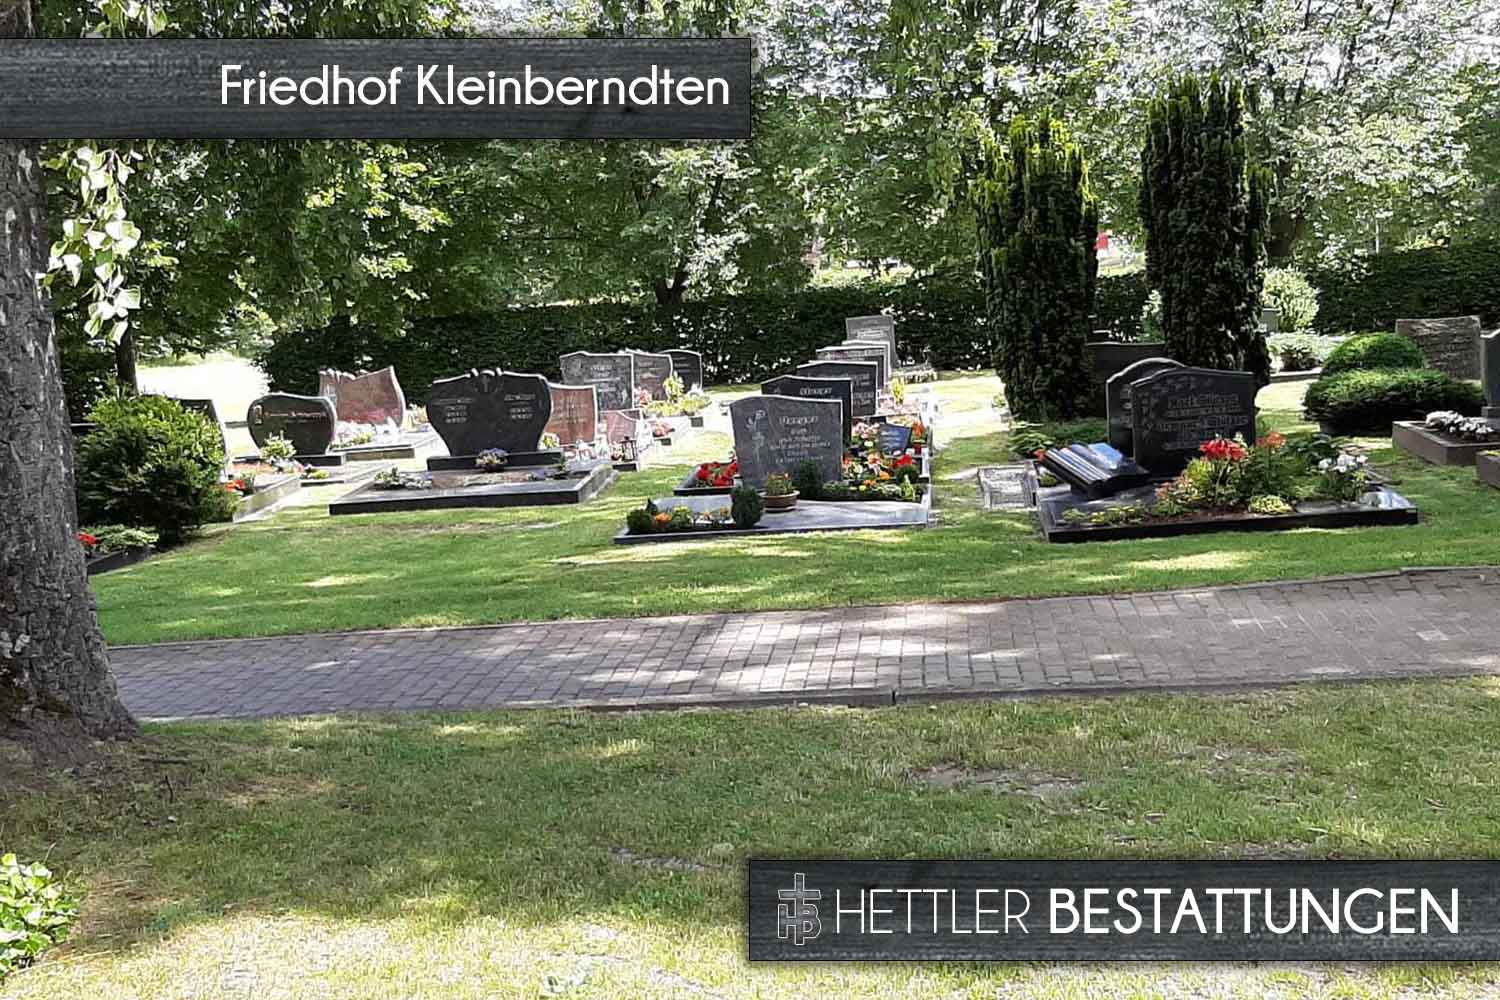 Friedhof in Kleinberndten. Ihr Ort des Abschieds mit Hettler Bestattungen.